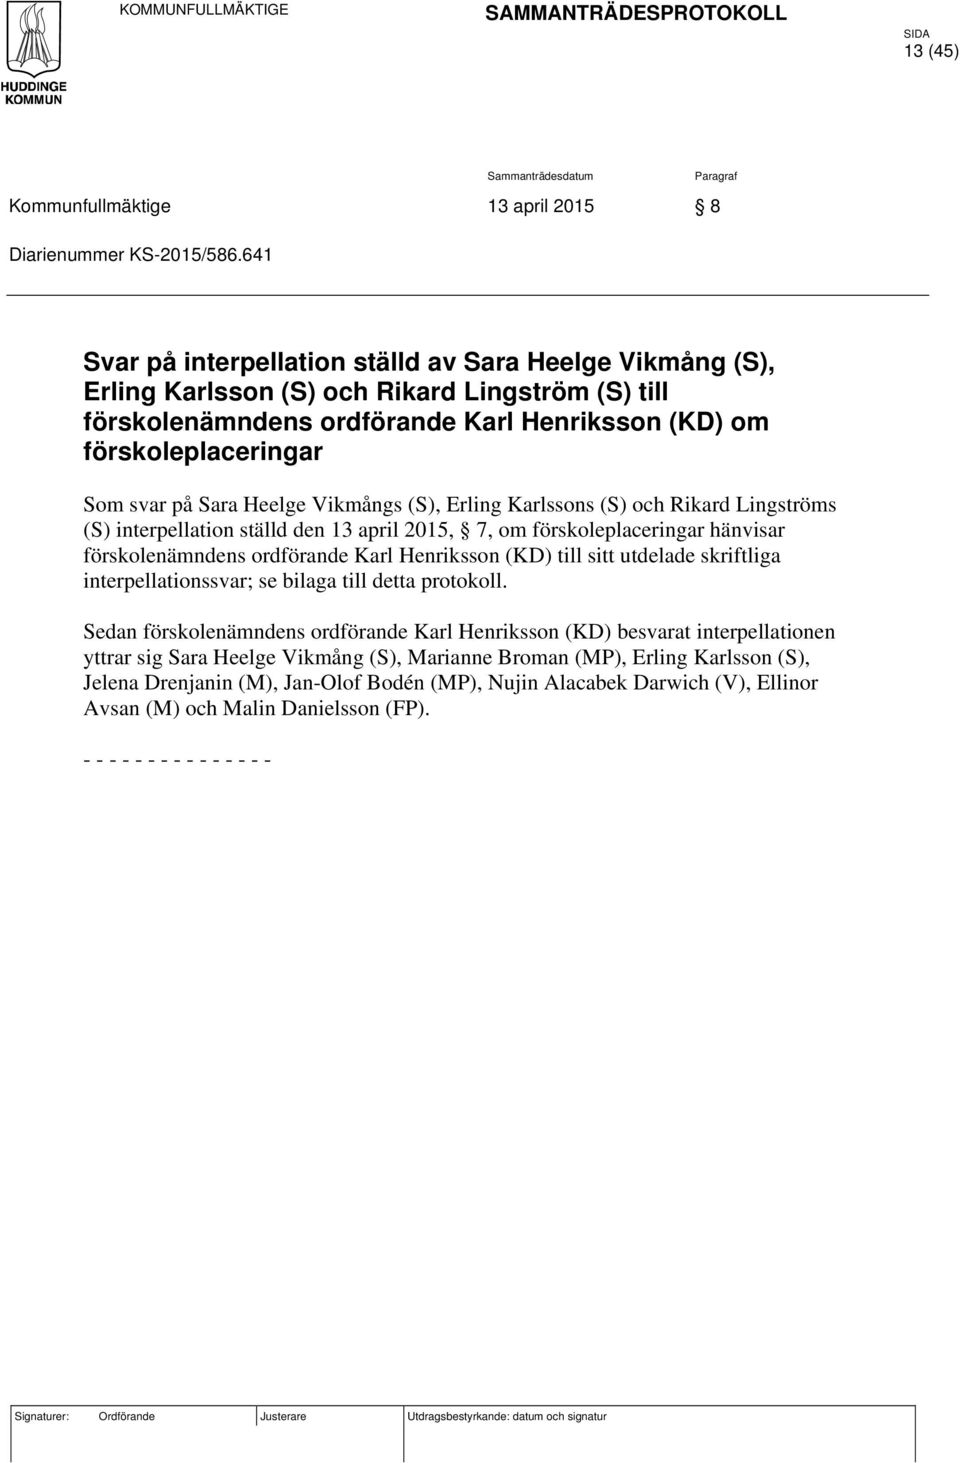 Sara Heelge Vikmångs (S), Erling Karlssons (S) och Rikard Lingströms (S) interpellation ställd den 13 april 2015, 7, om förskoleplaceringar hänvisar förskolenämndens ordförande Karl Henriksson (KD)